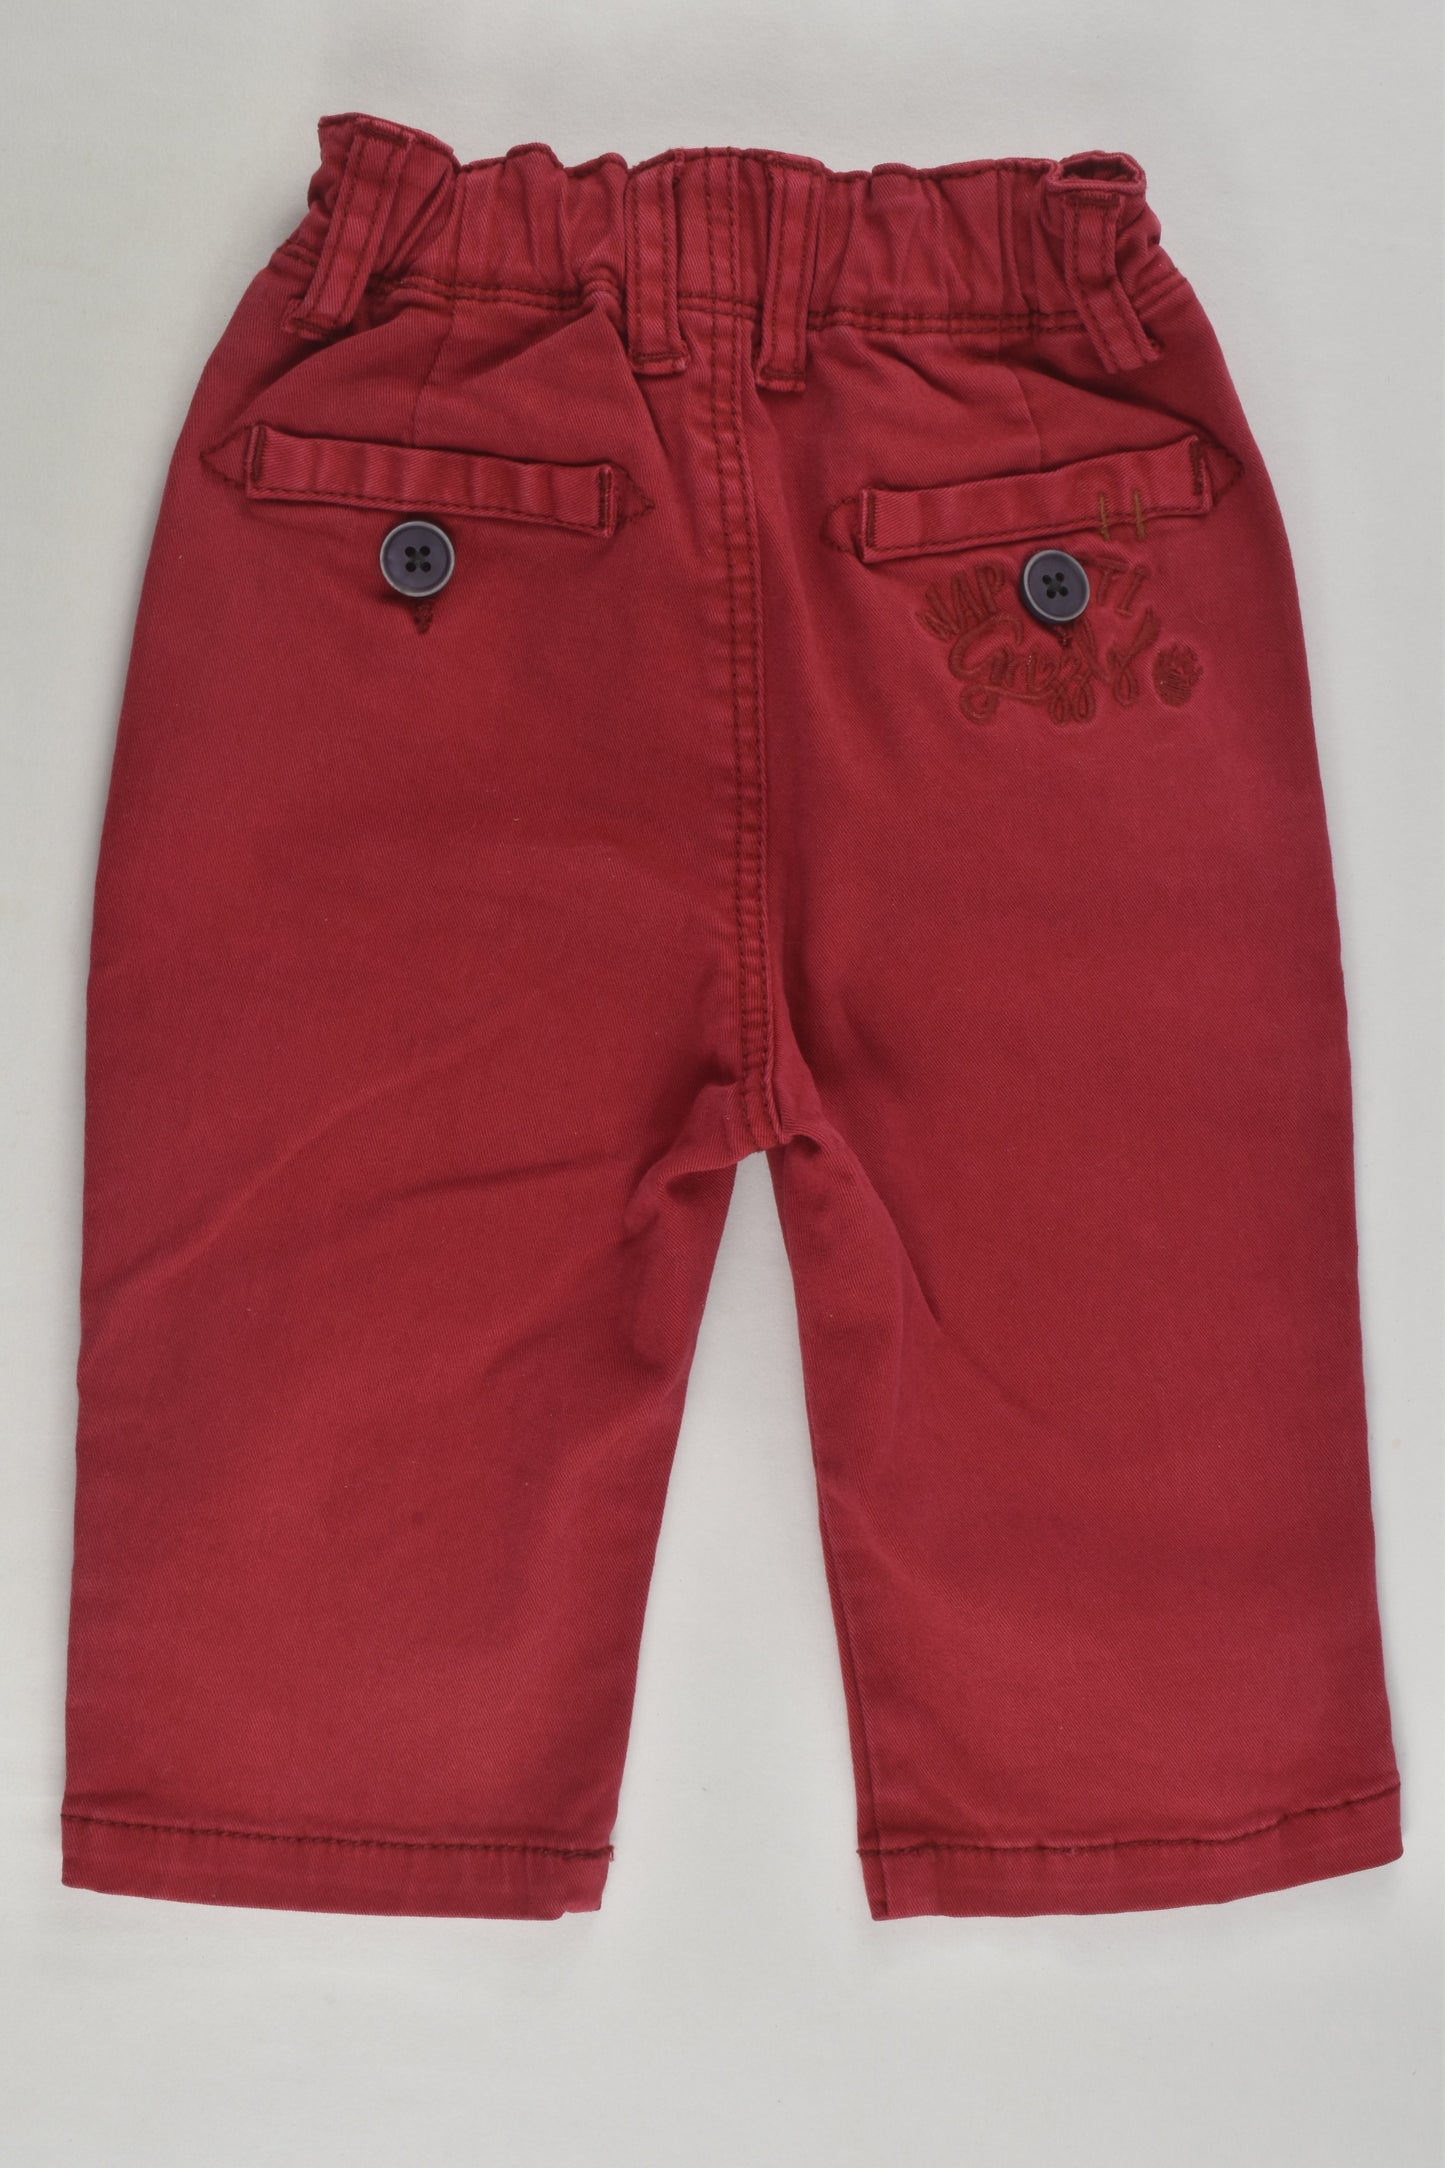 Catimini Size 00 (6 months, 68 cm) Pants